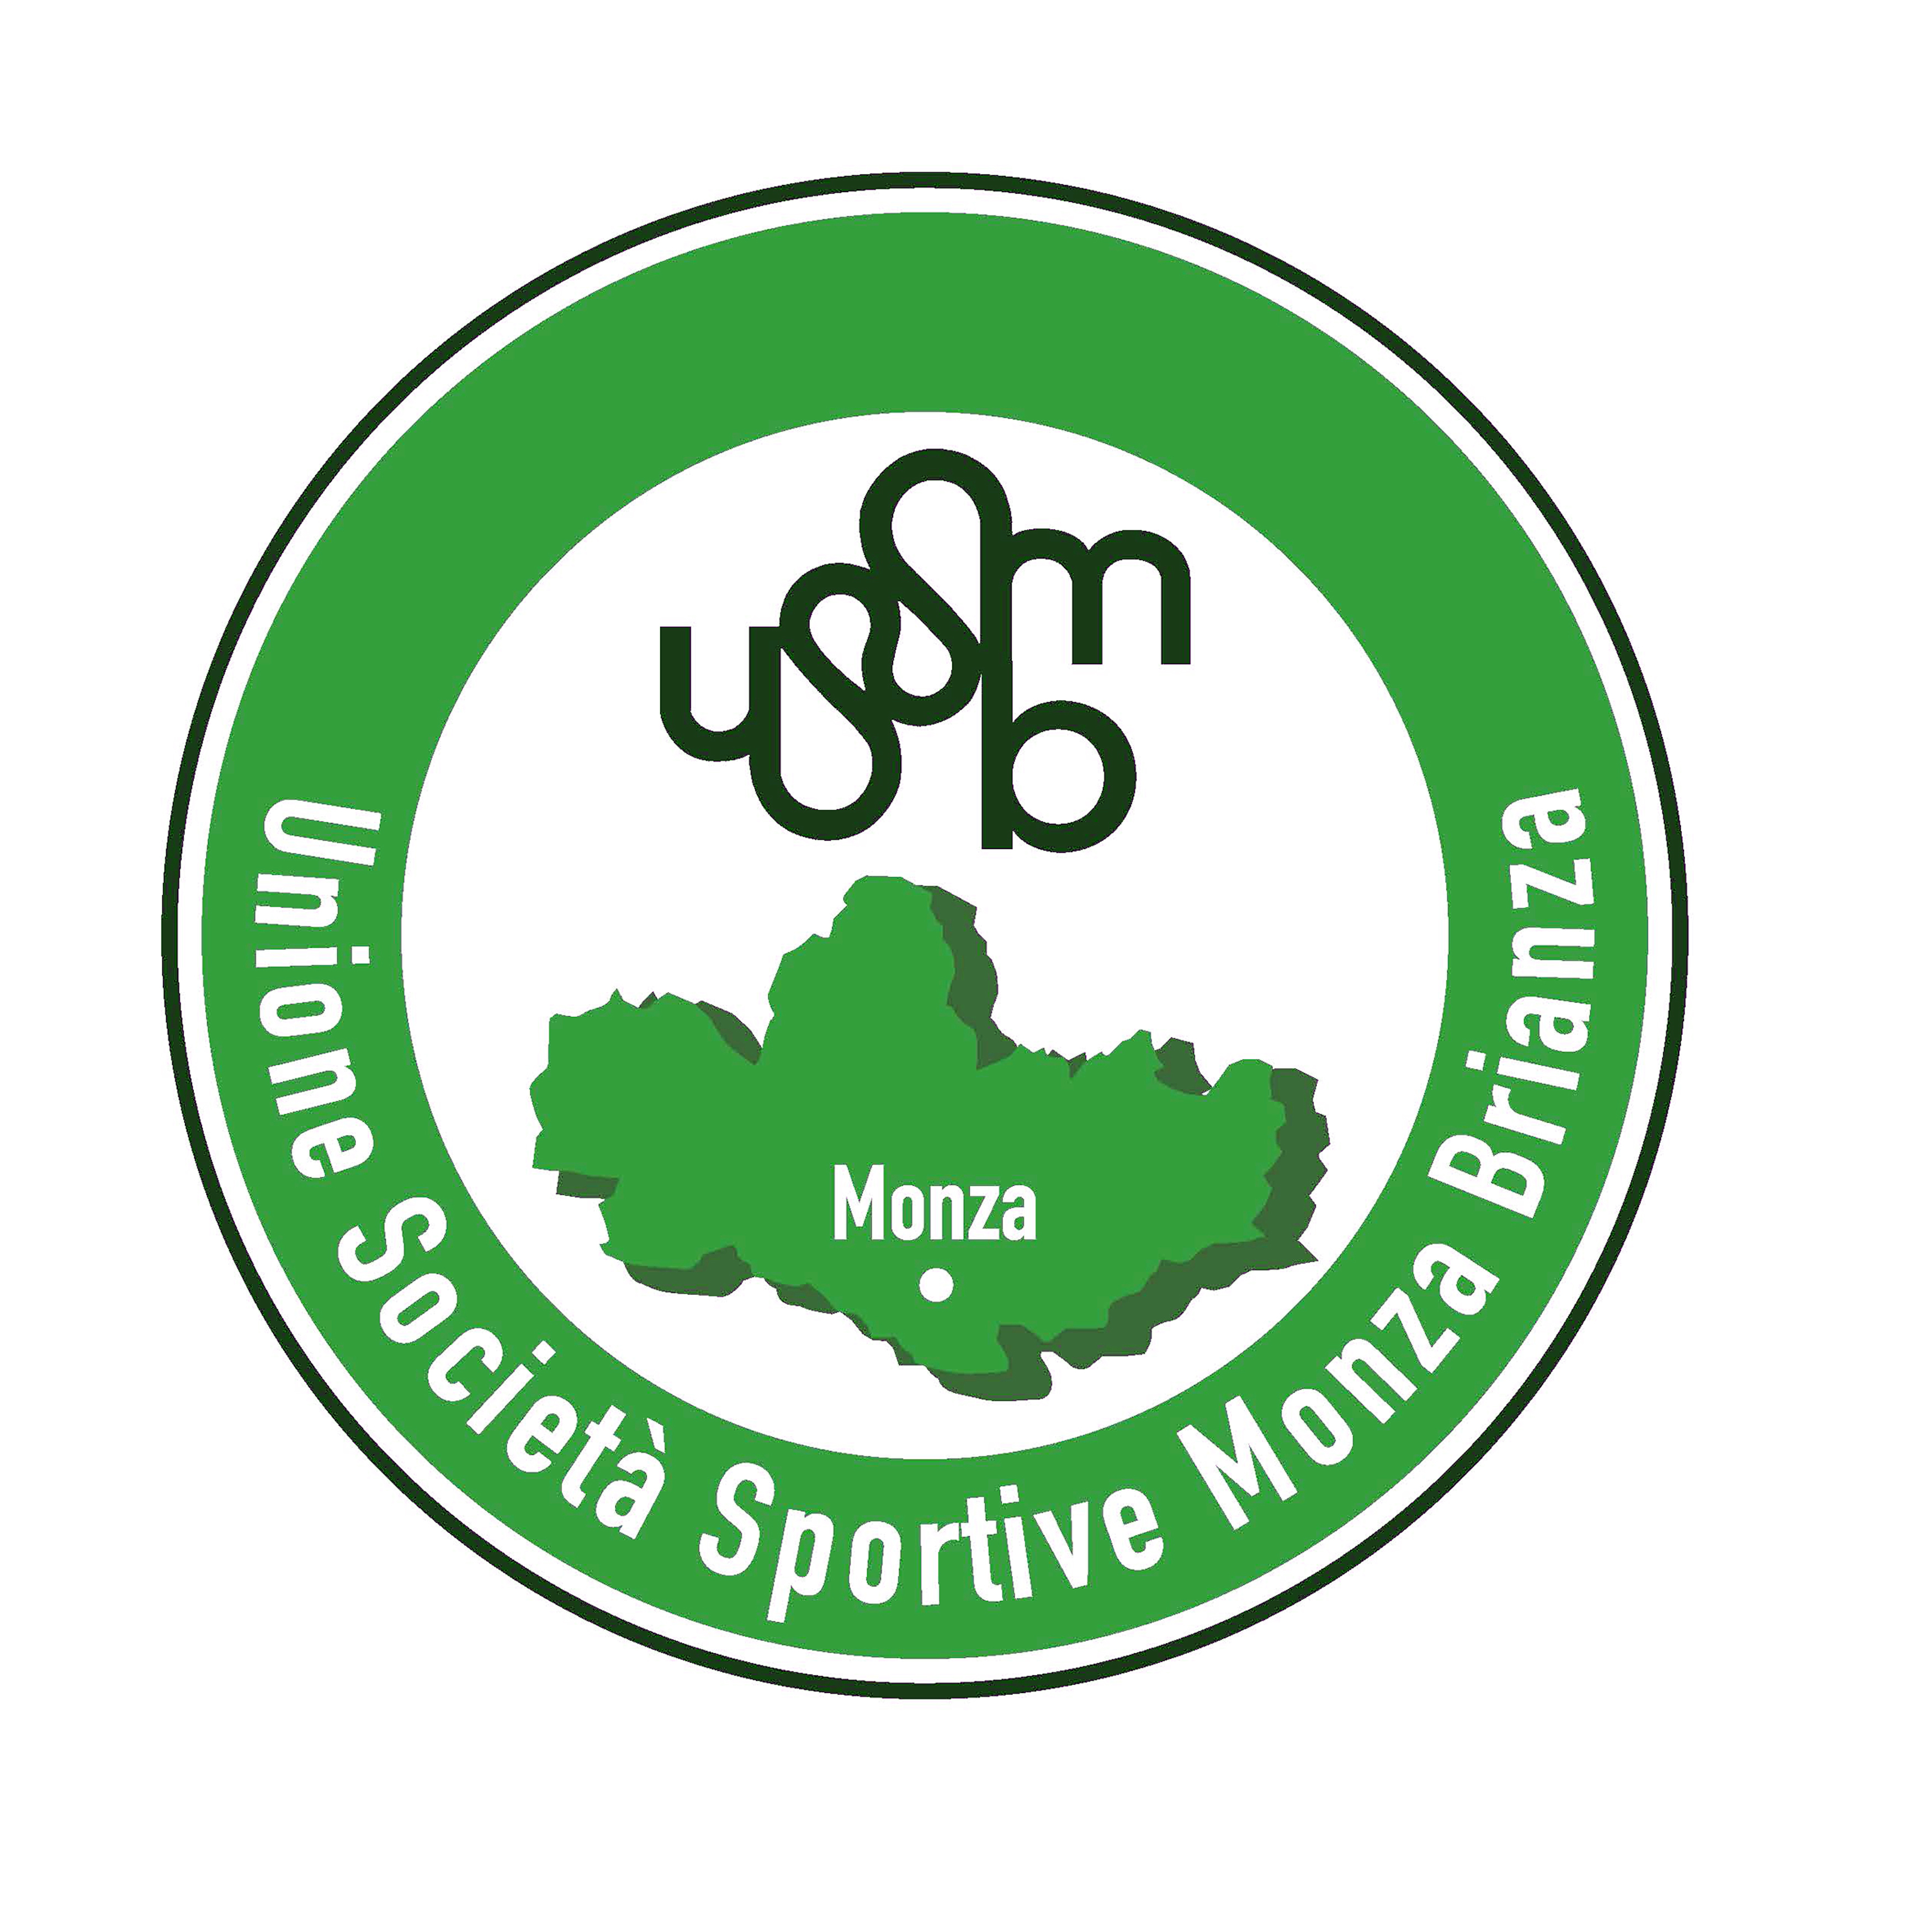 42° monza sport festival ussm